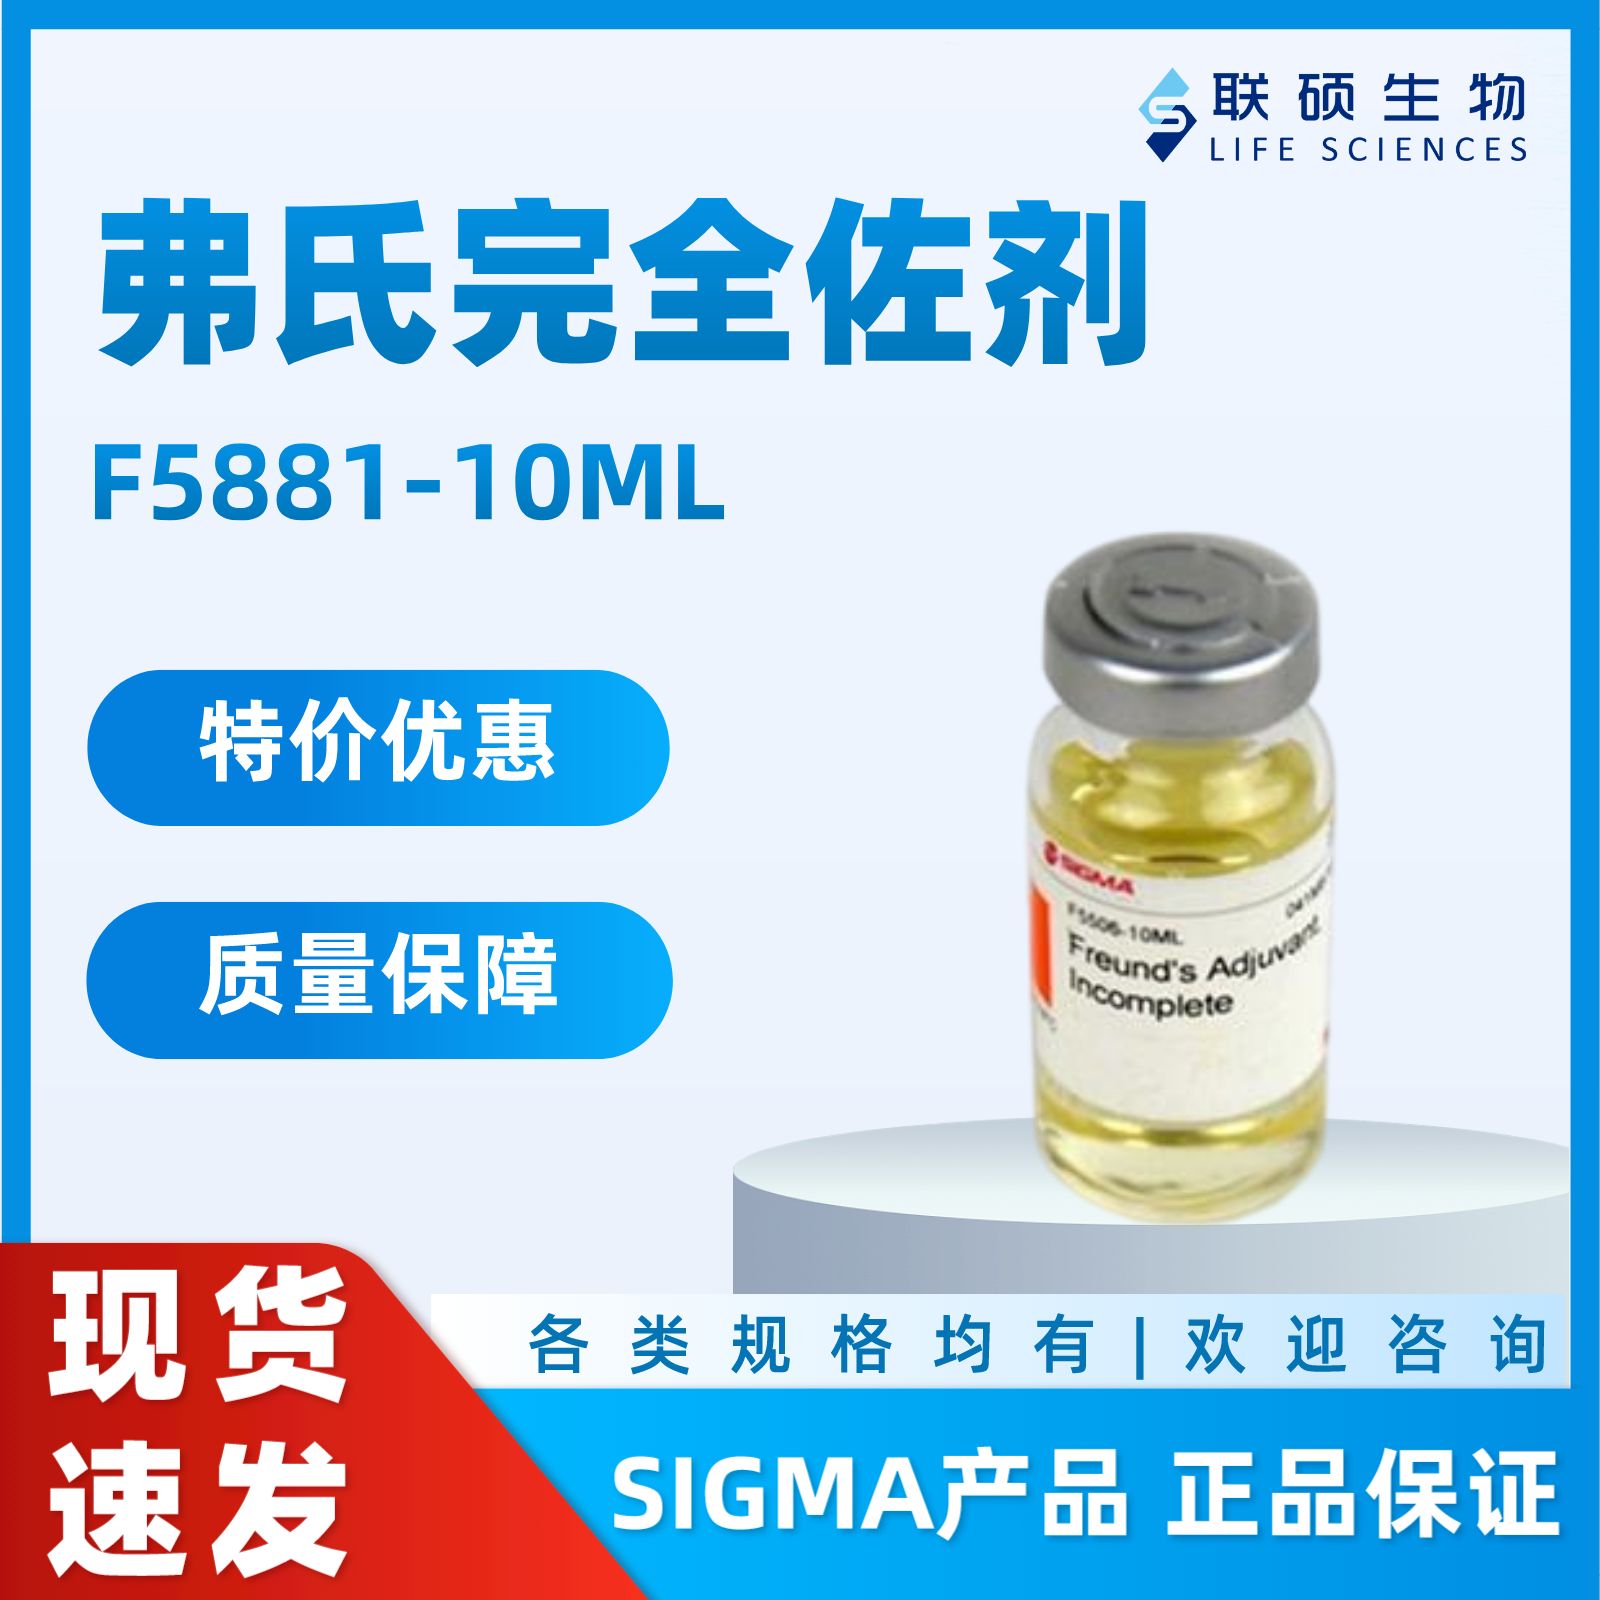 特价：Sigma F5881 弗氏完全佐剂